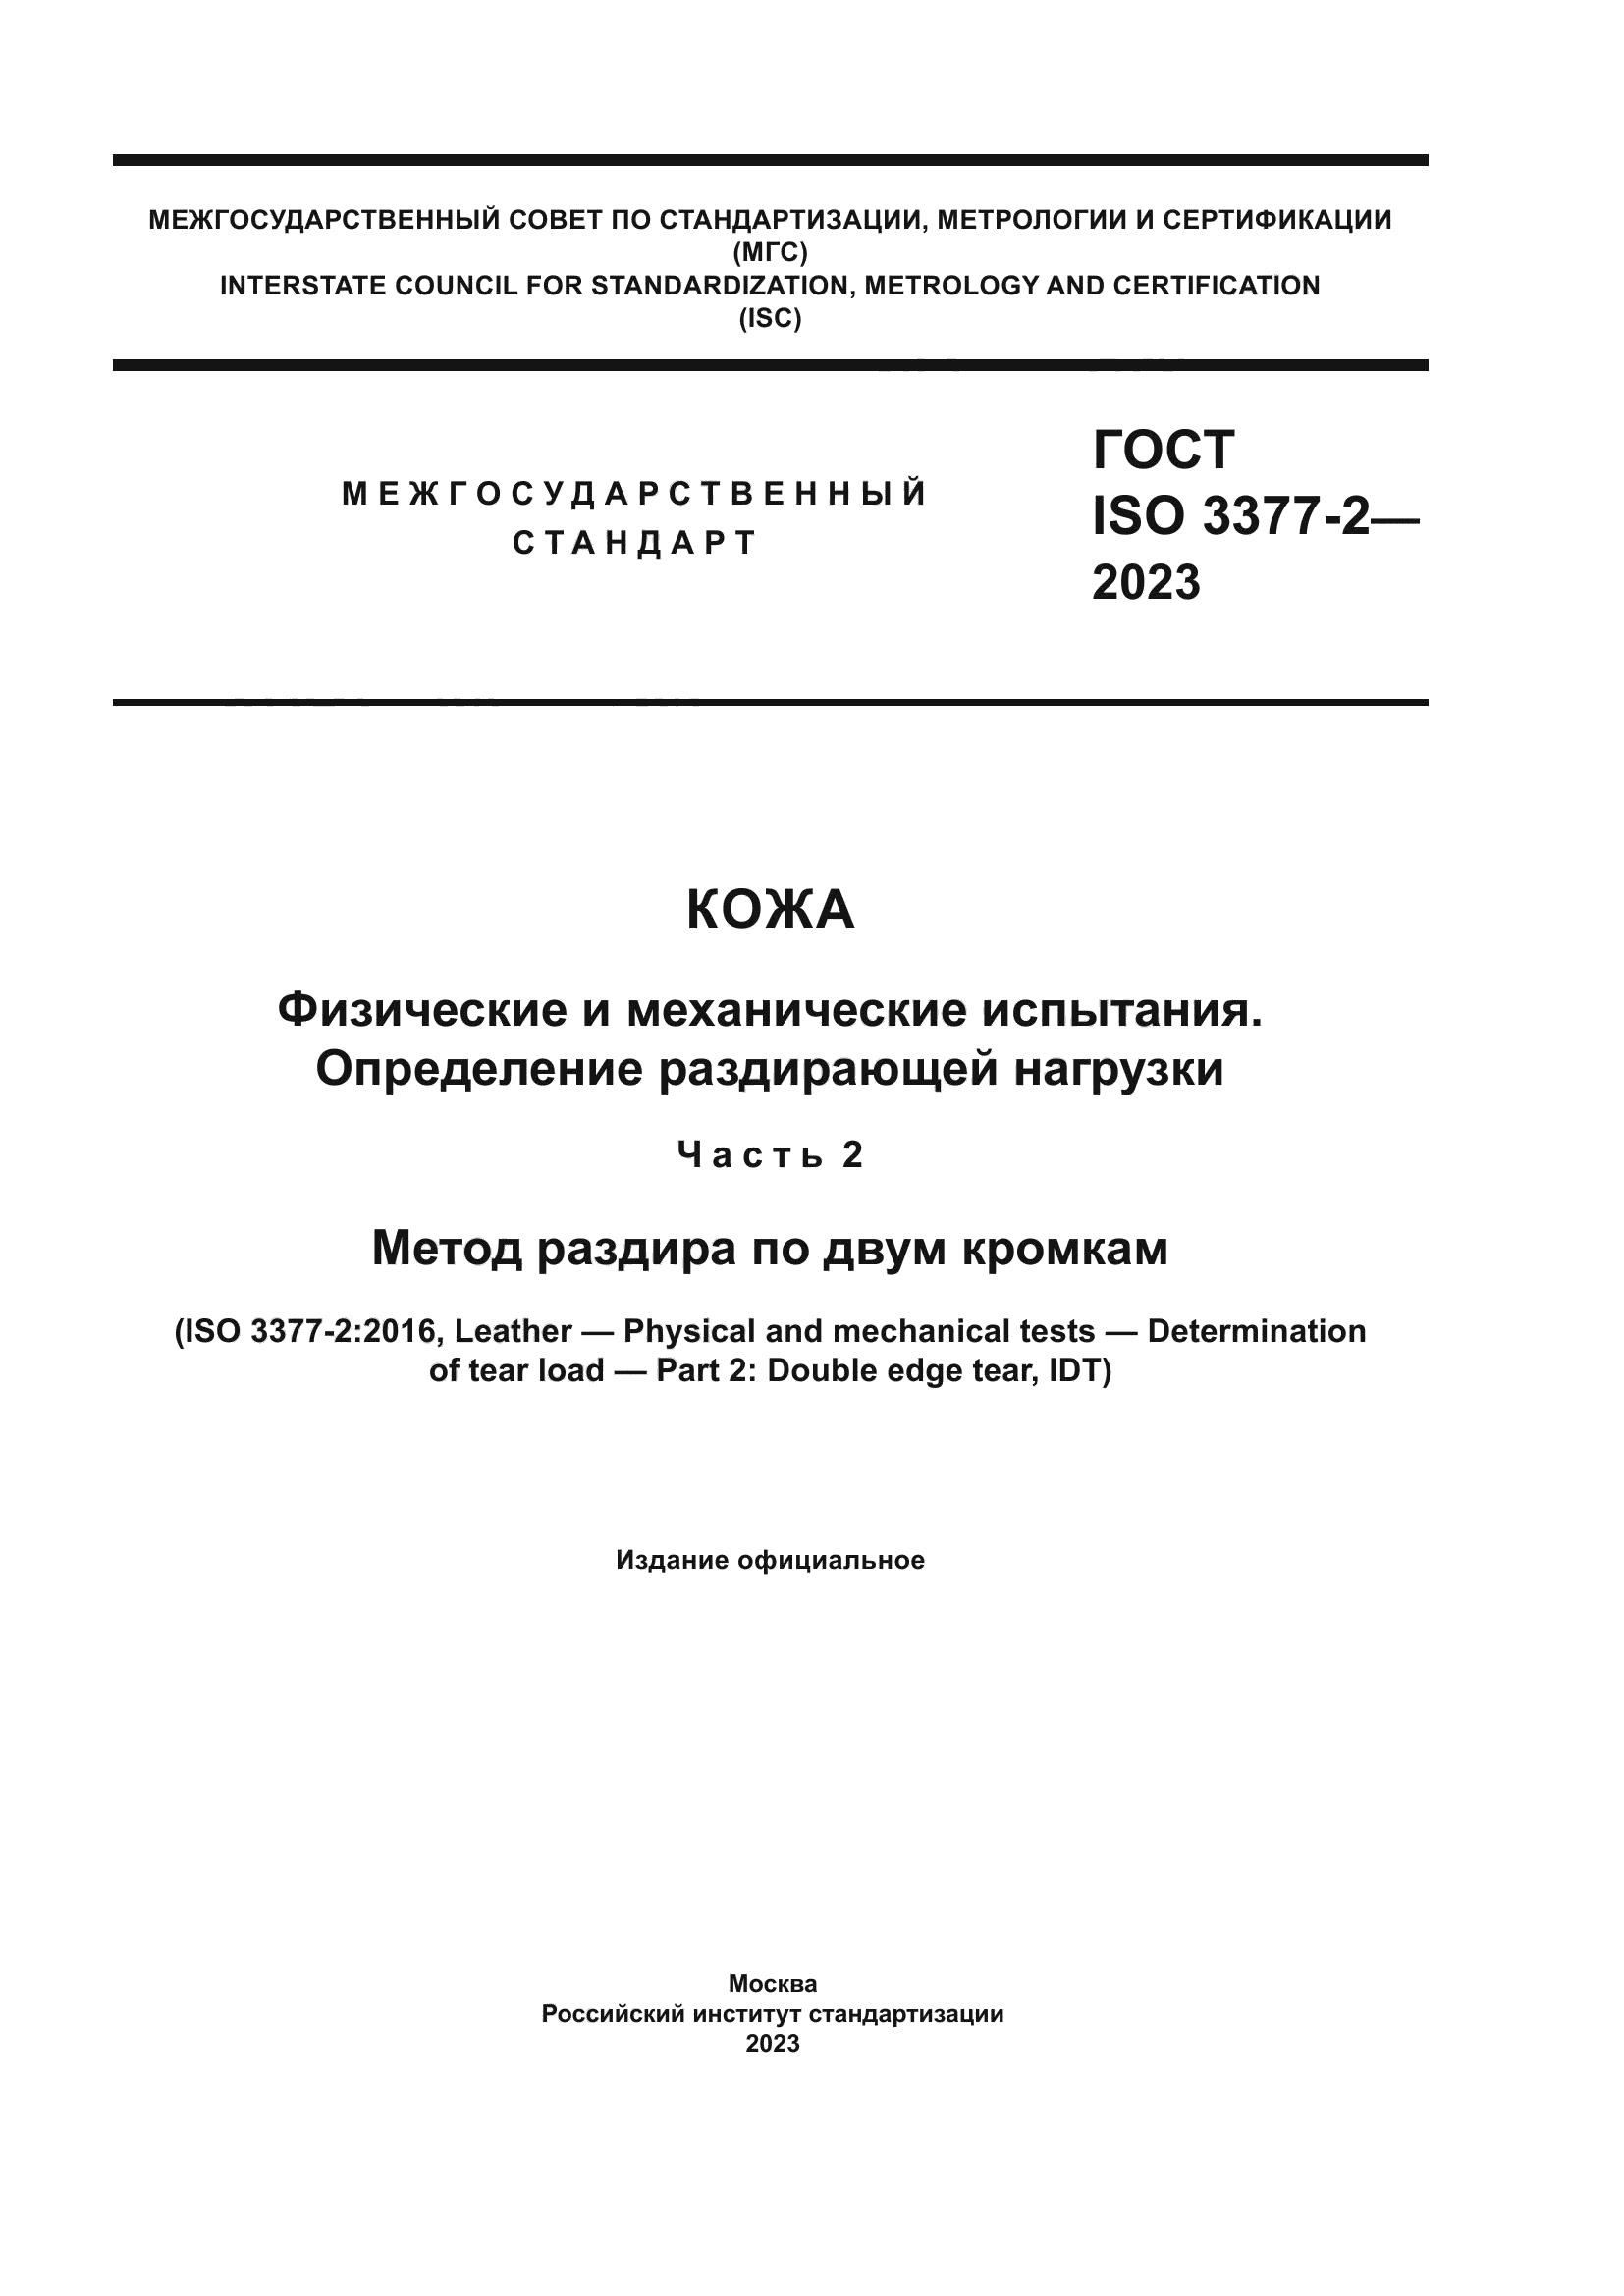 ГОСТ ISO 3377-2-2023